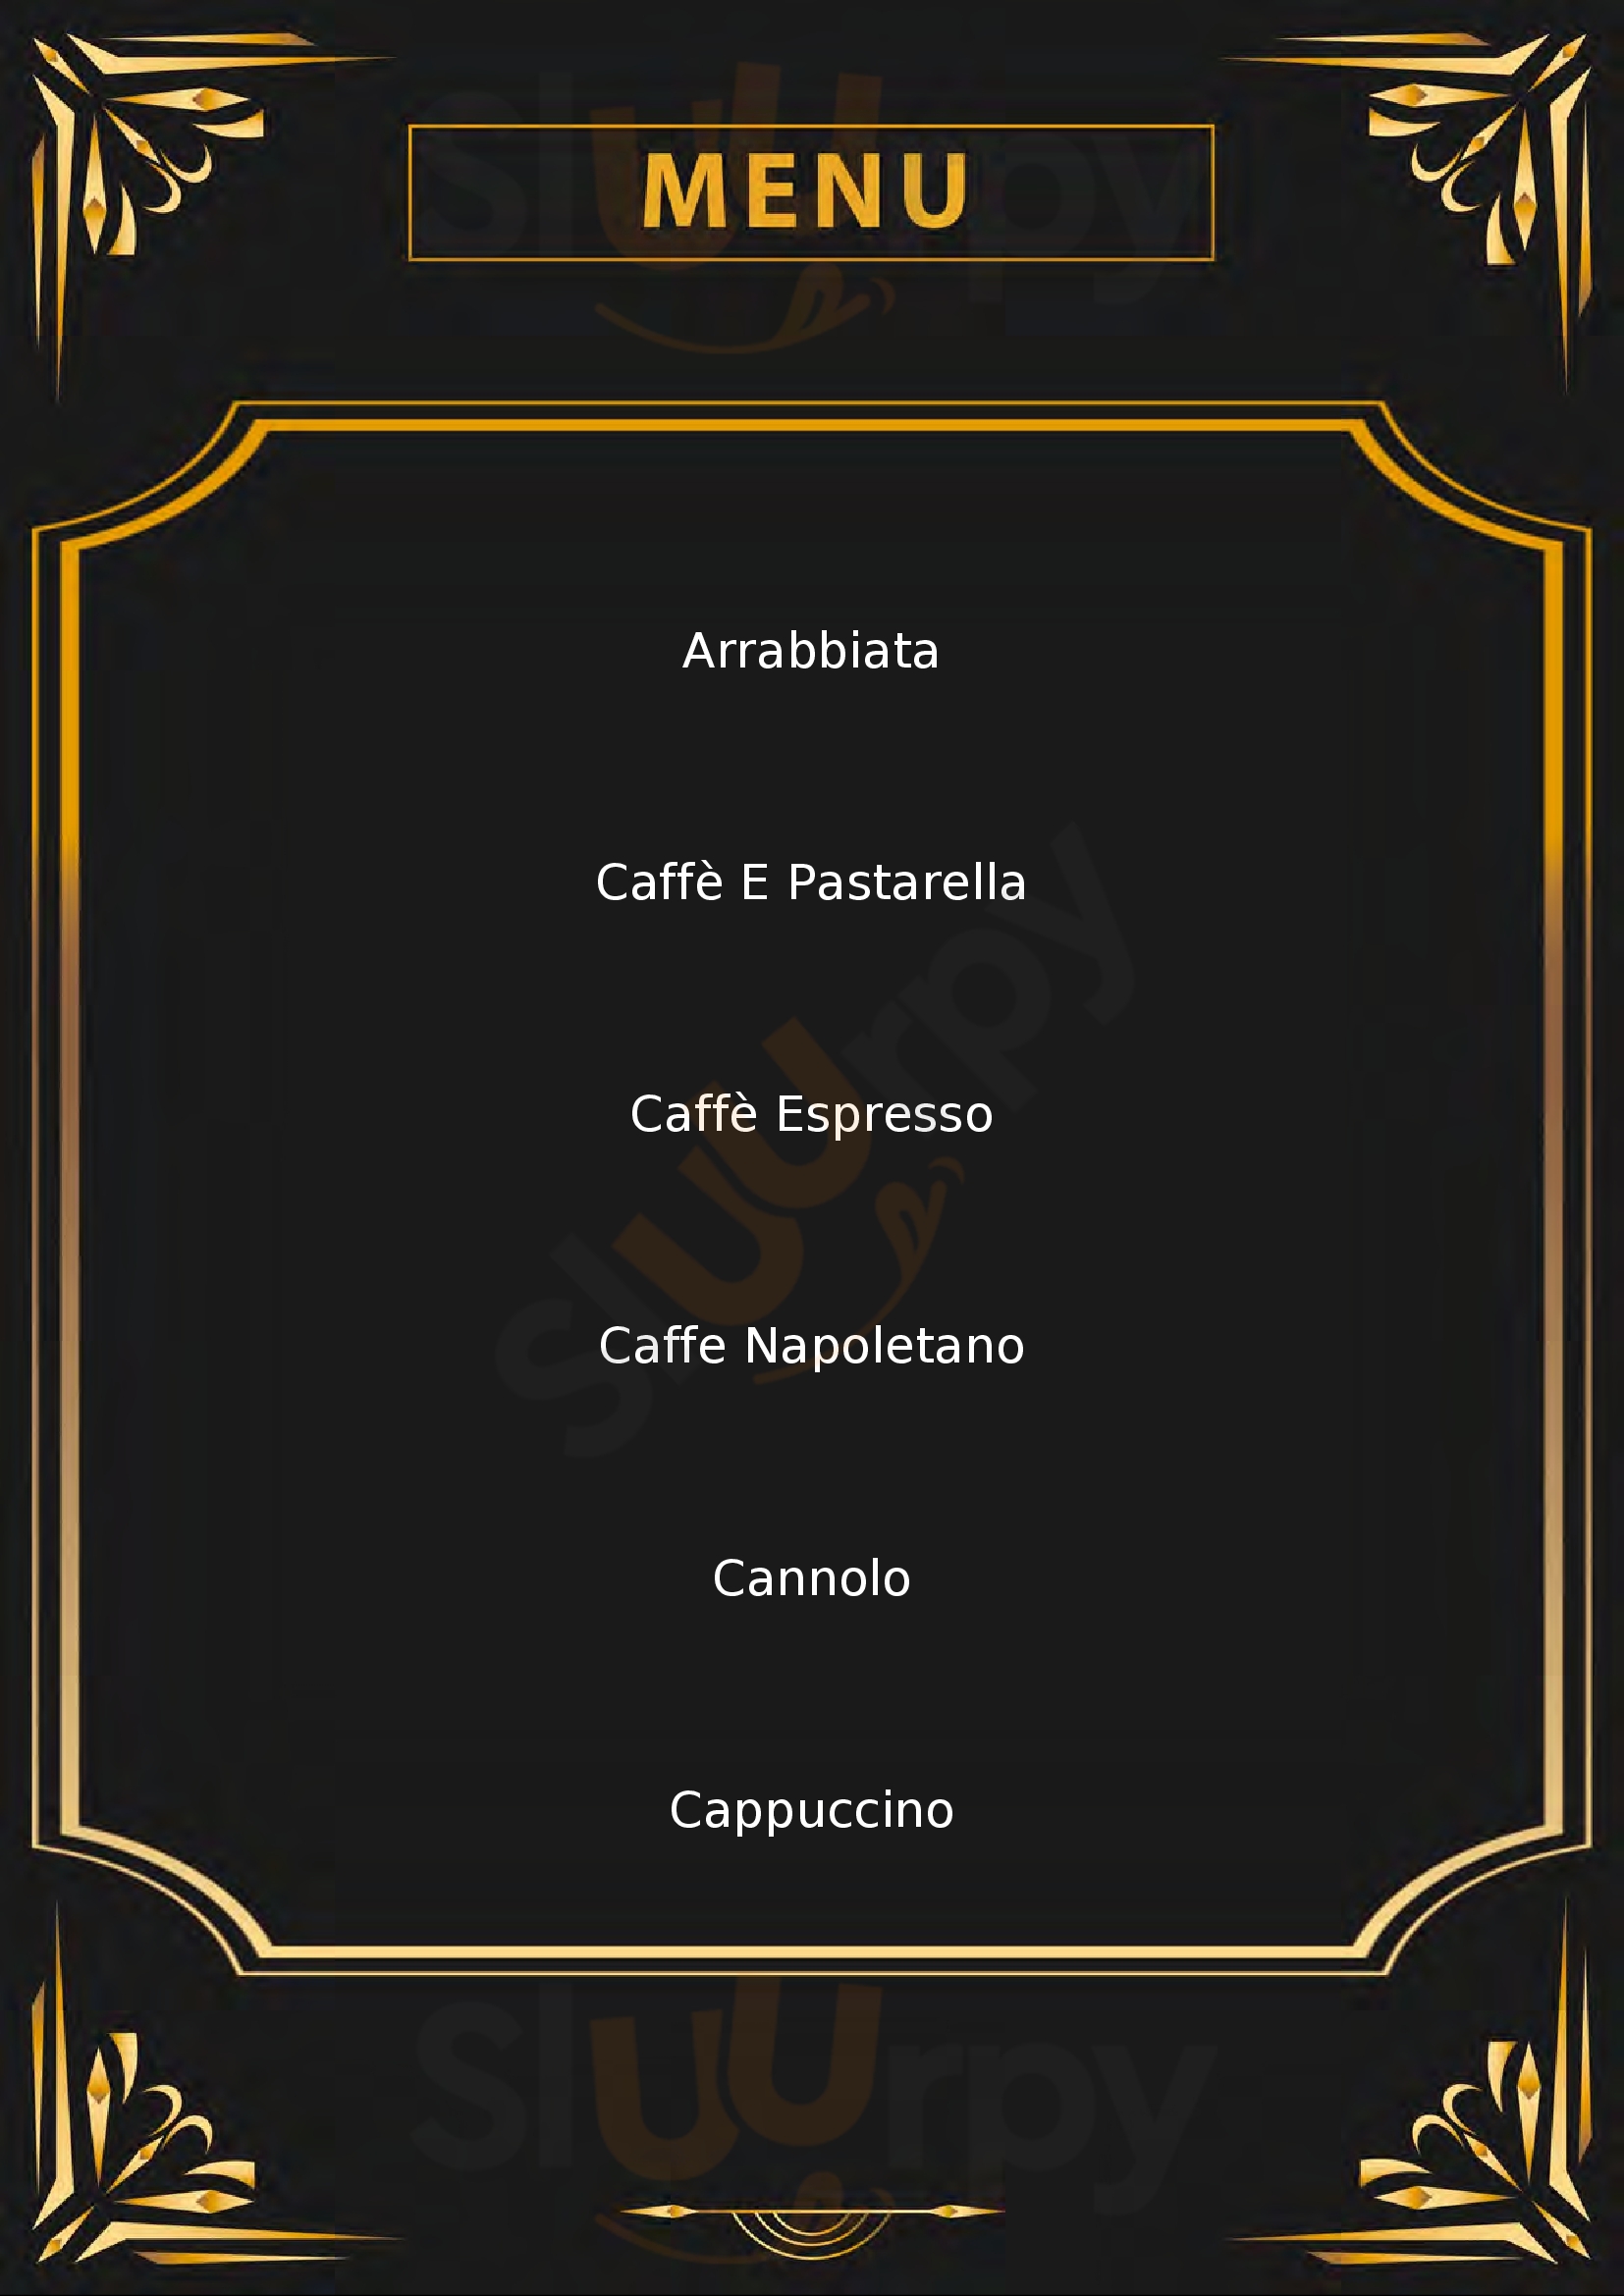 Caffè Napoli - Pisani Milano menù 1 pagina